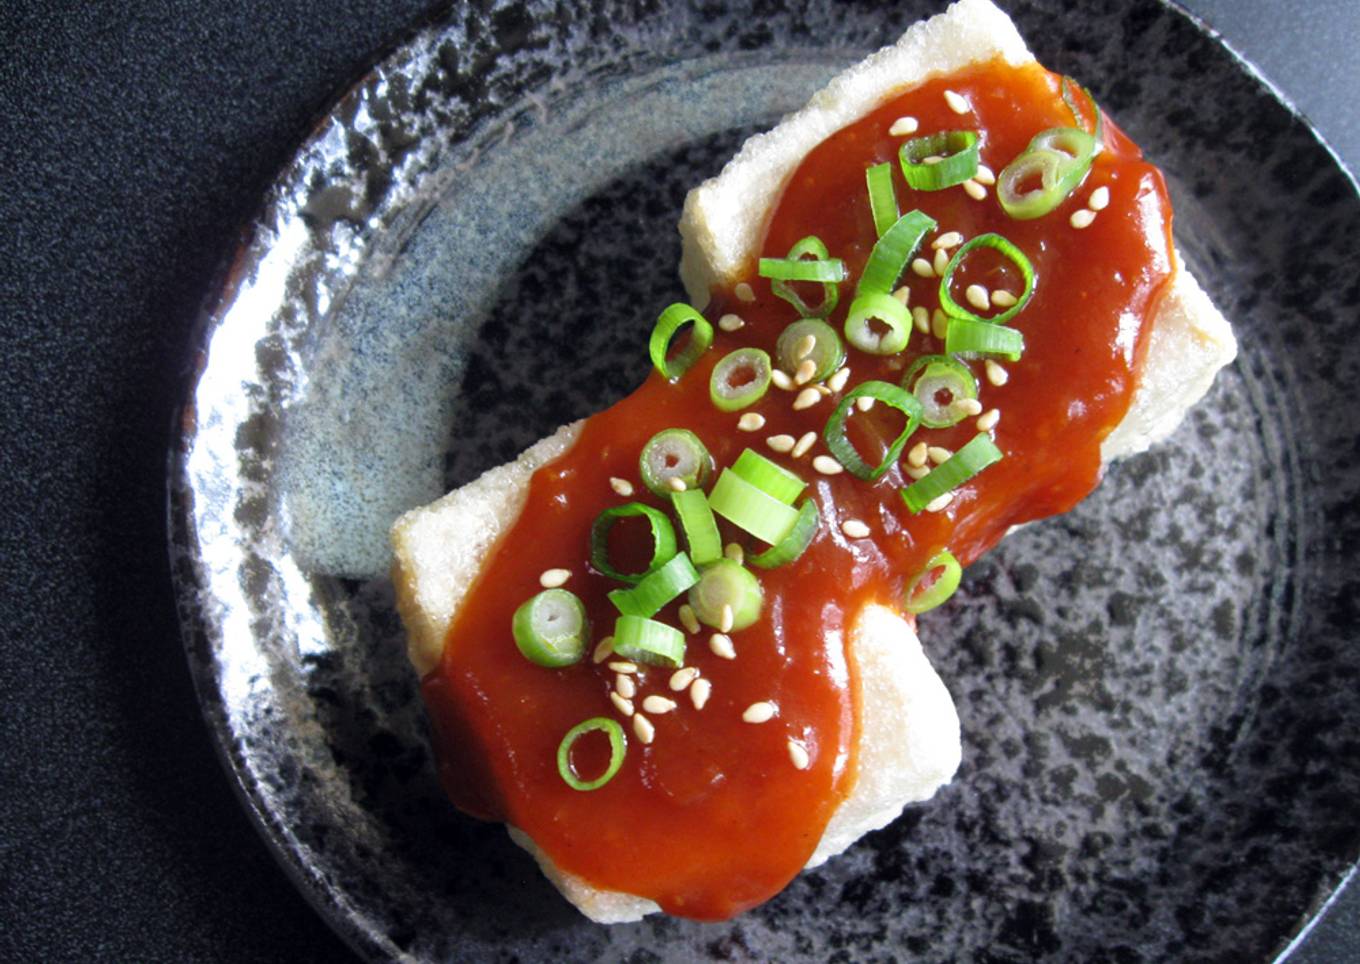 Agedashi Tofu with Gochujang Sauce